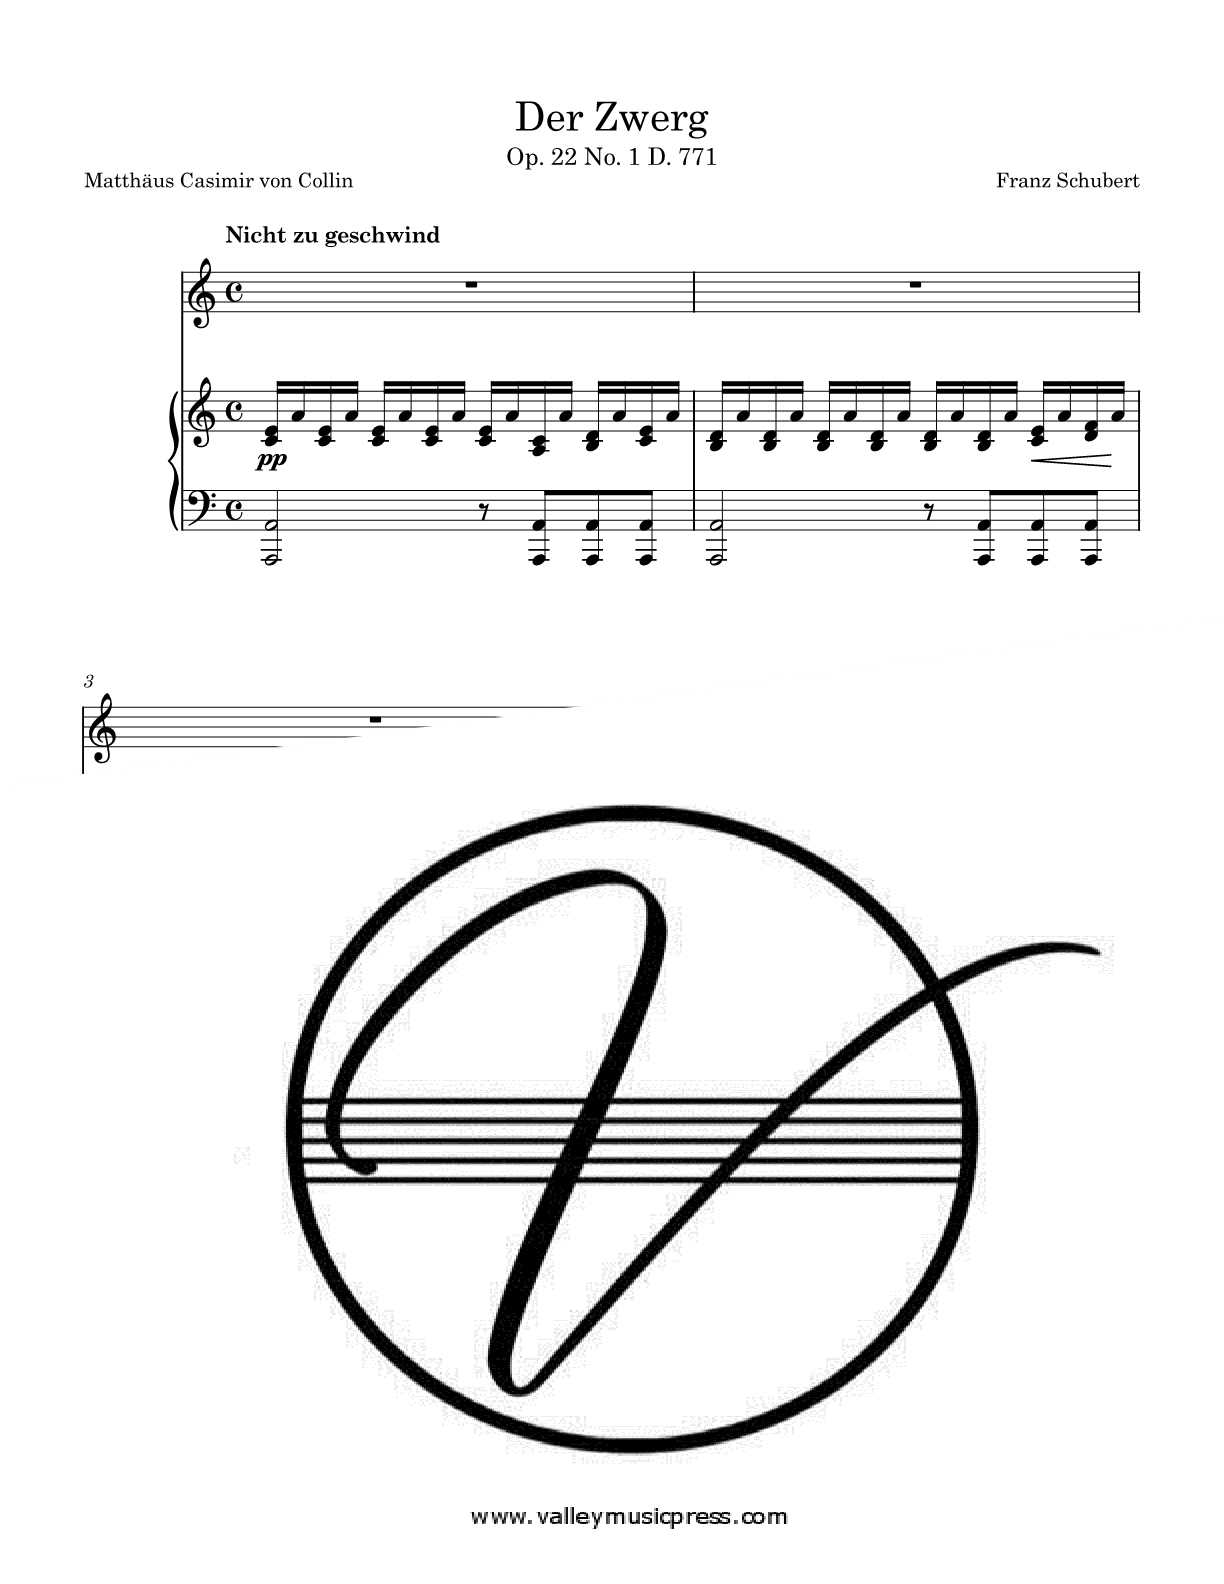 Schubert - Der Zwerg D. 771 Op. 22 No. 1 (Voice)